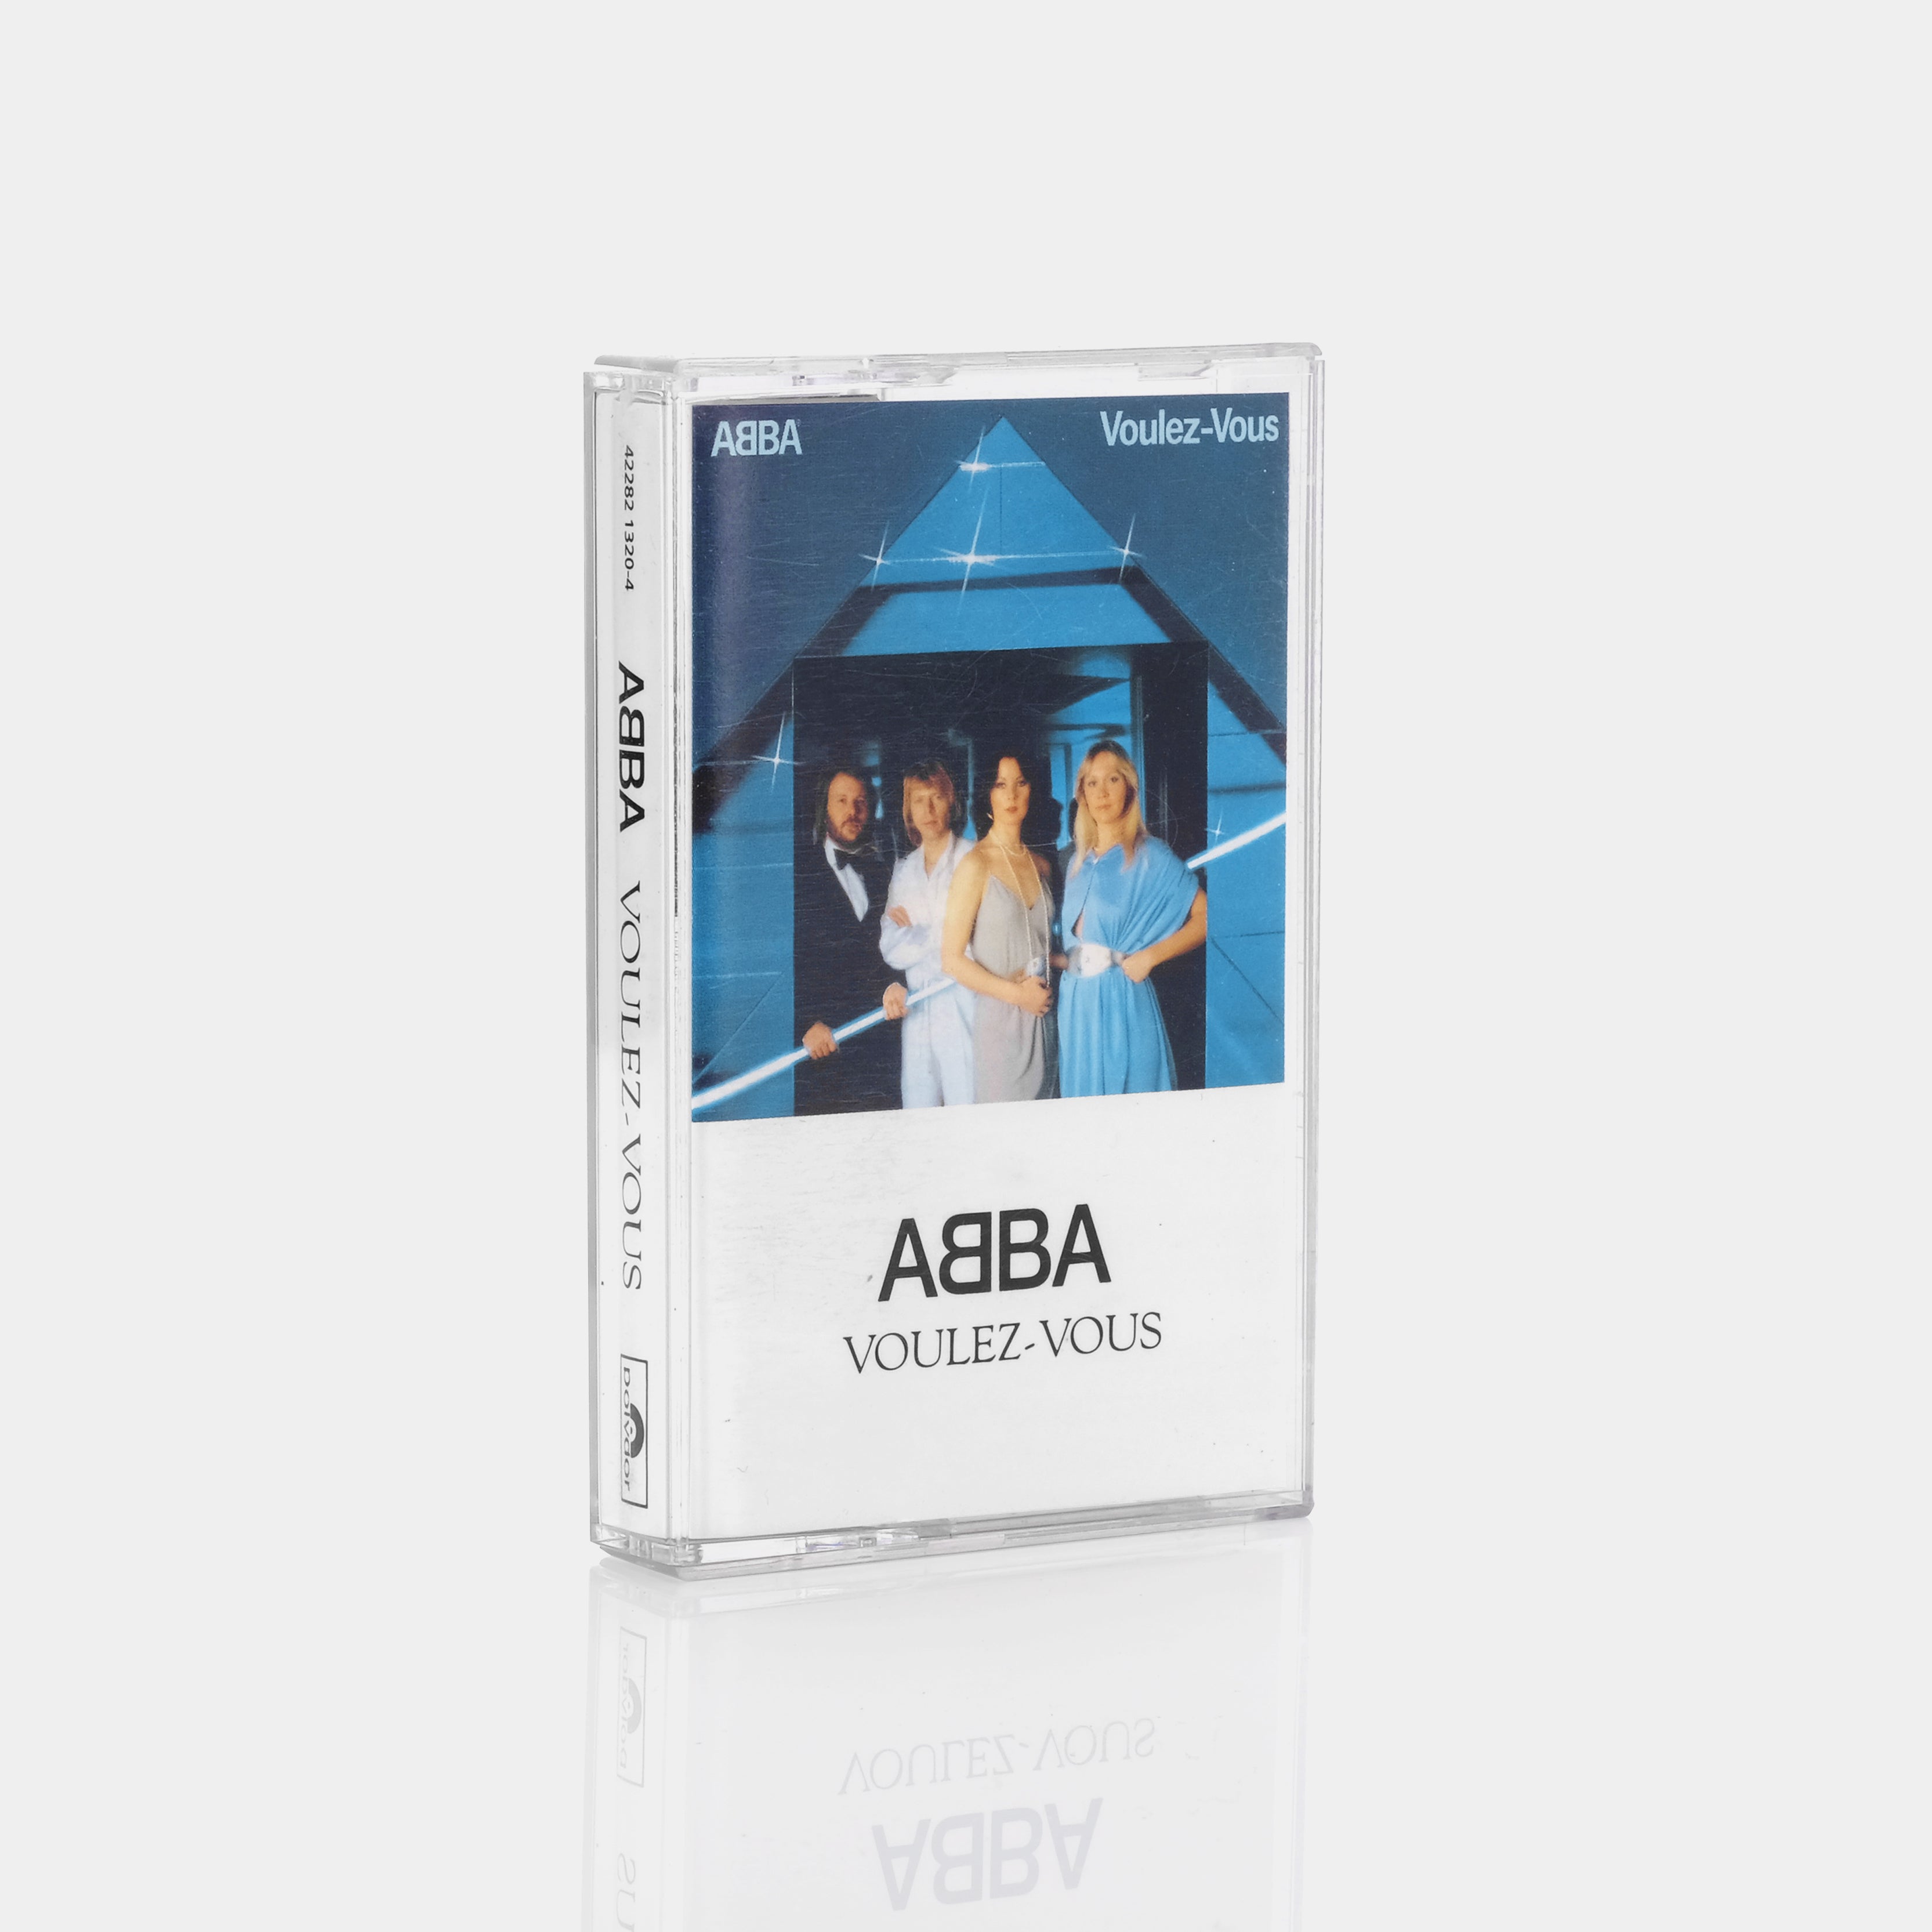 ABBA - Voulez-Vous Cassette Tape